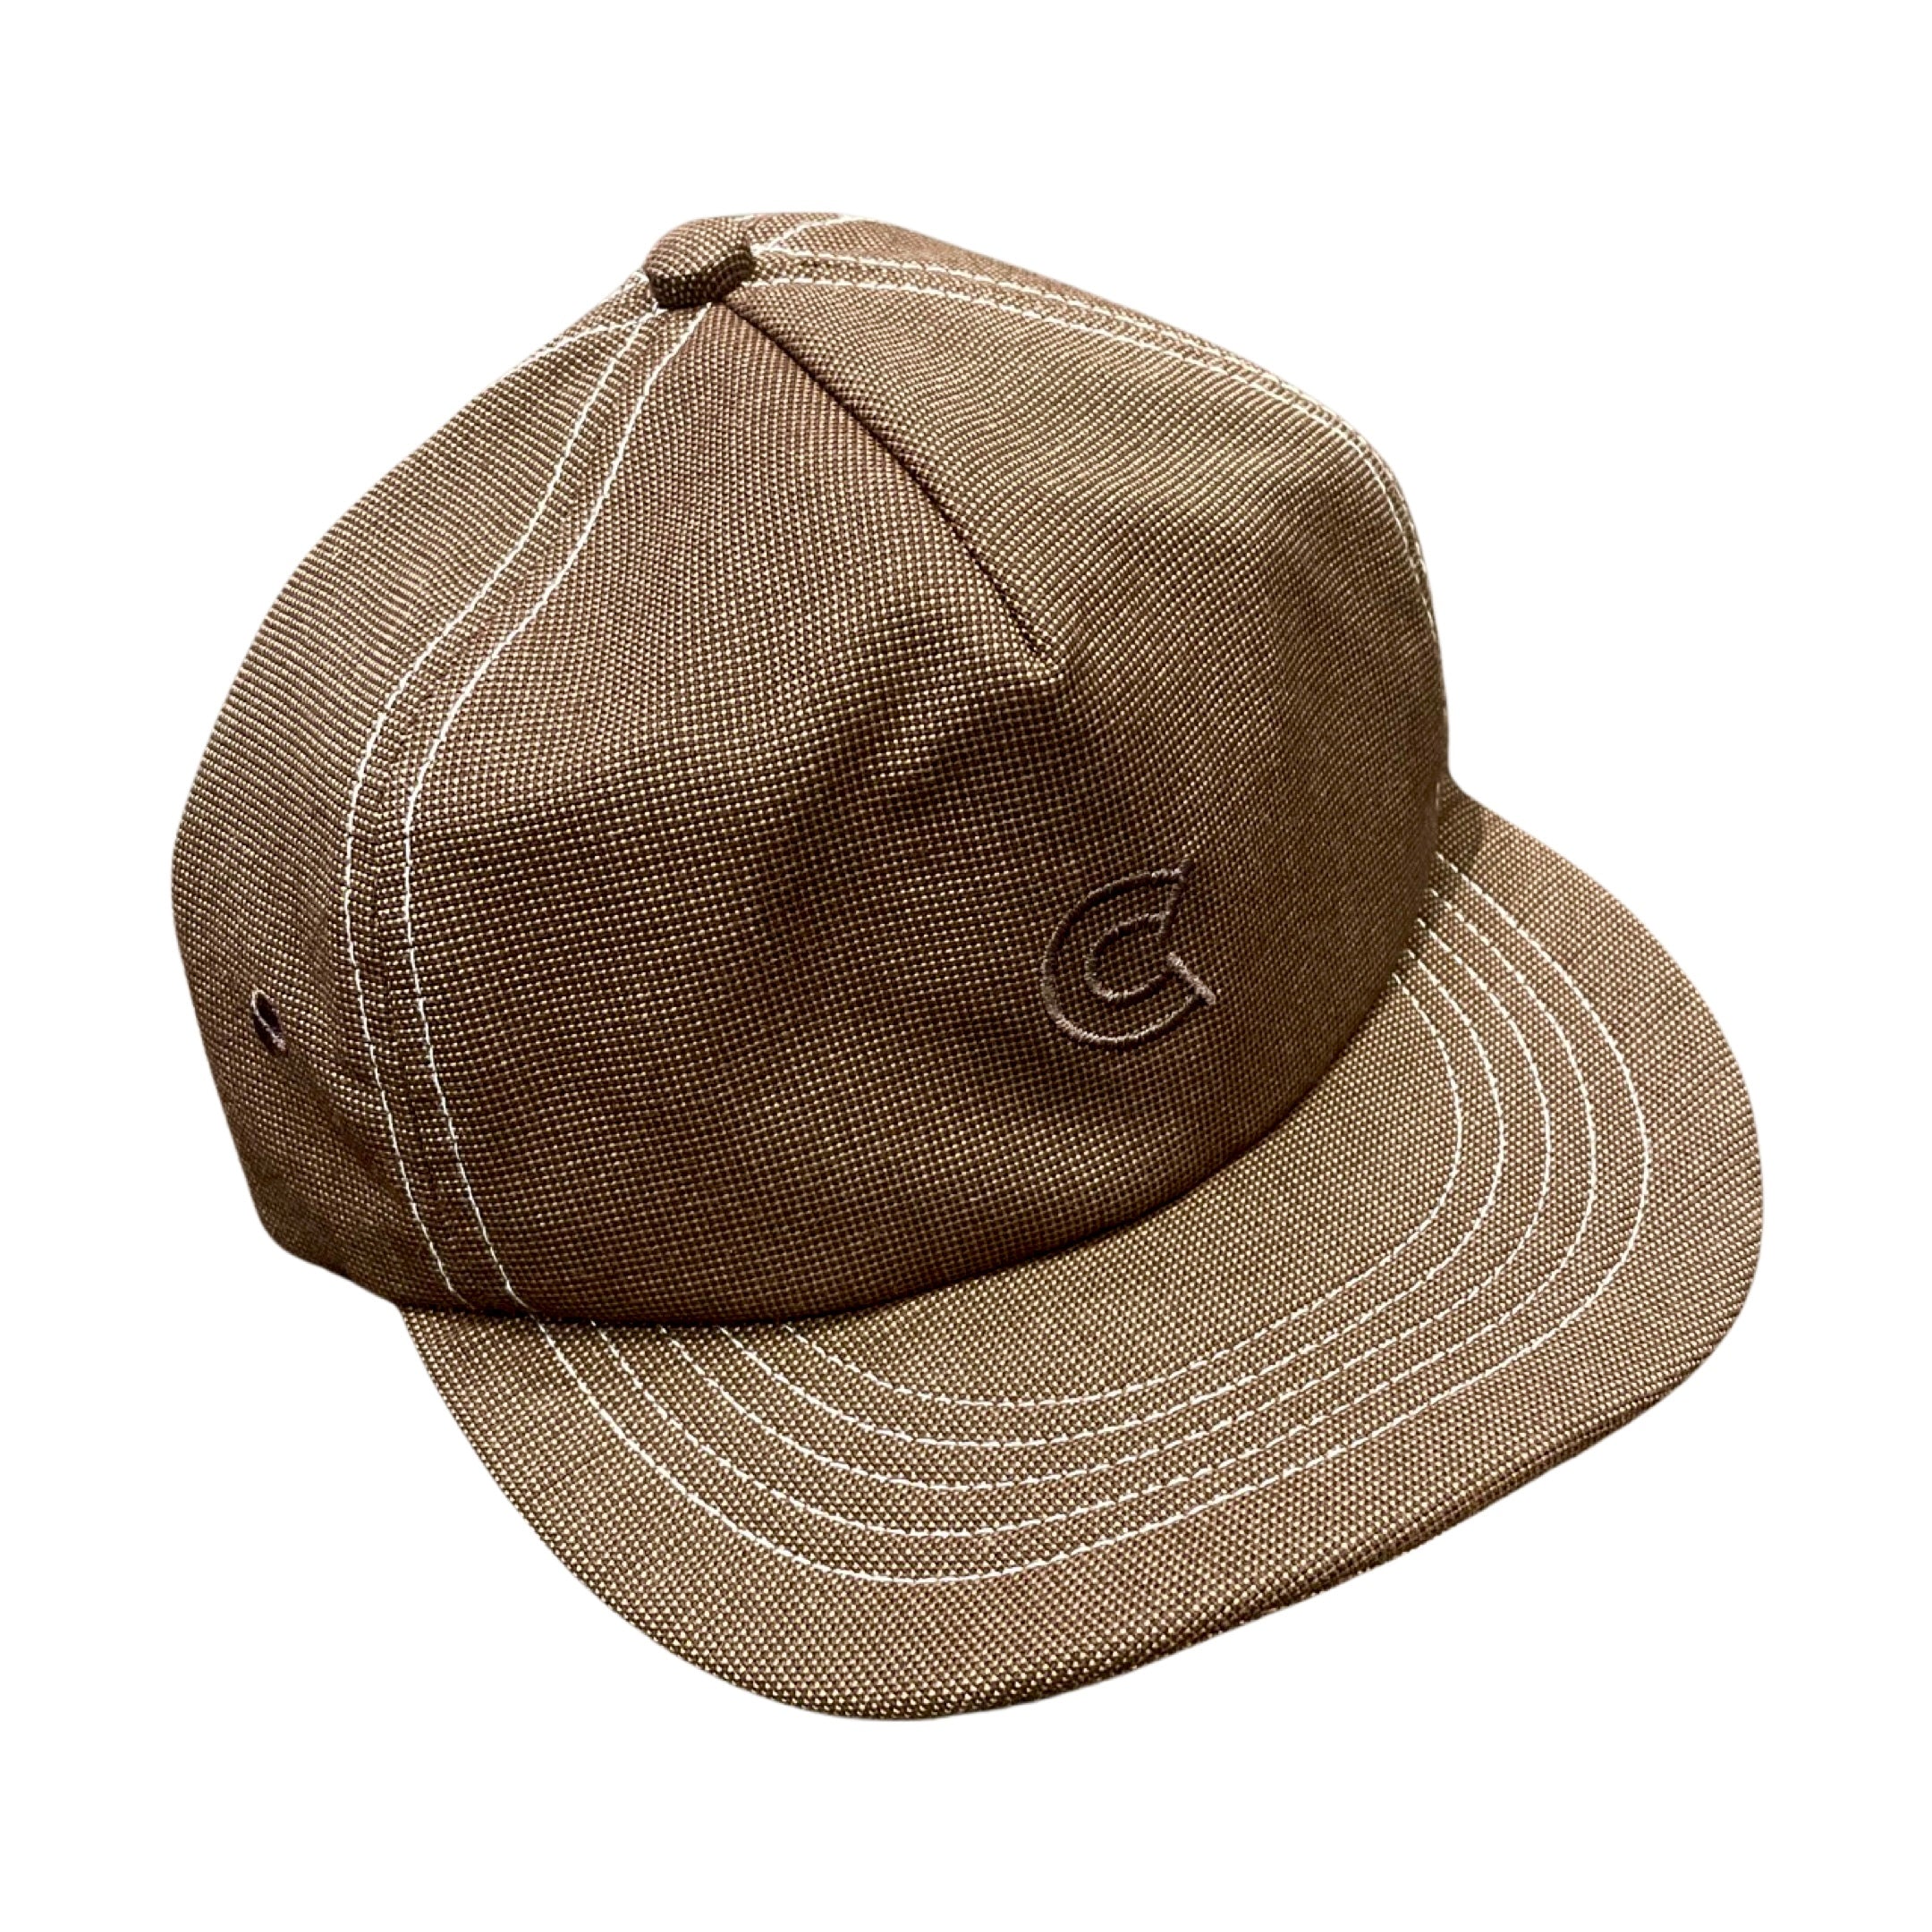 COLONY CLOTHING / ORIGINAL CAP (NEW COLOR)